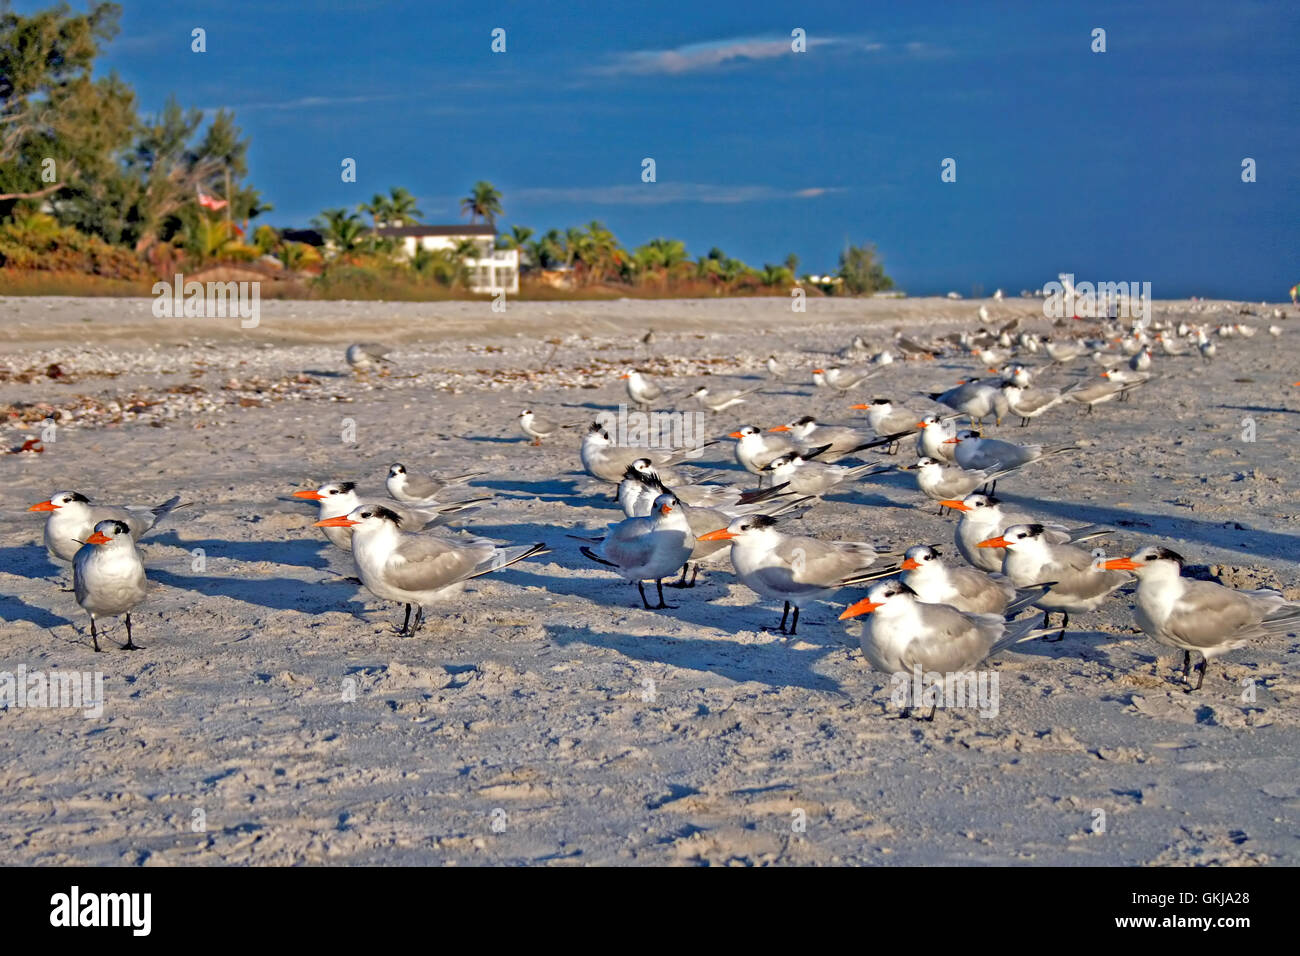 Un groupe d'oiseaux debout sur une plage. Banque D'Images